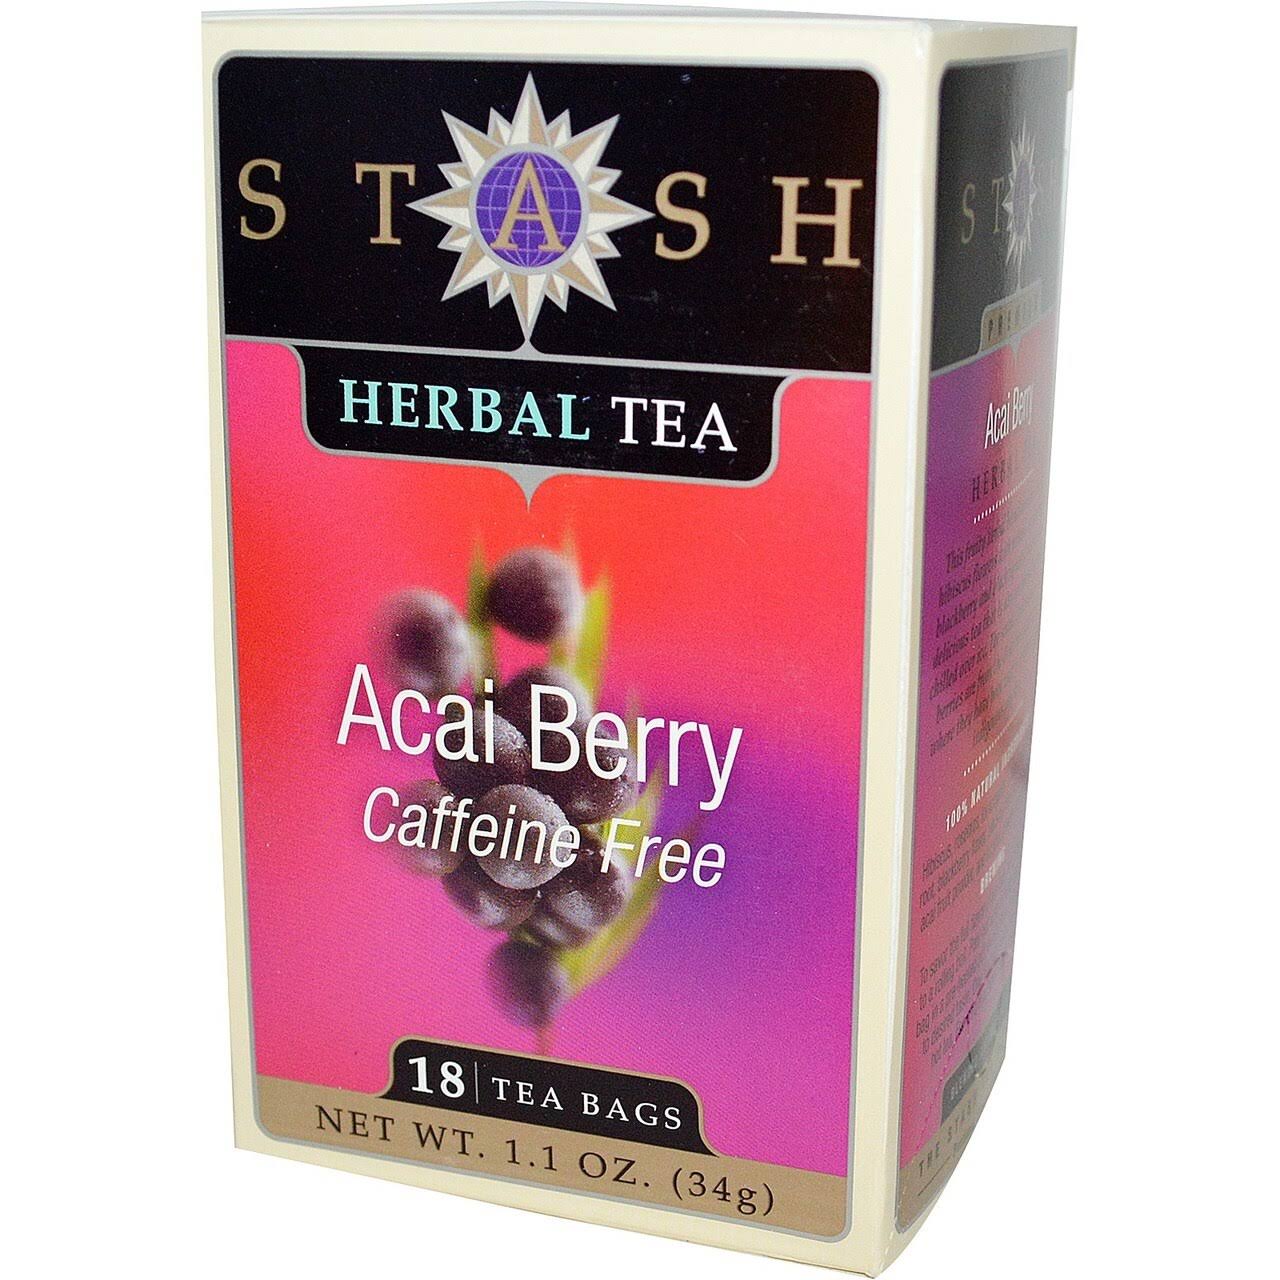 Stash Herbal Tea - Acai Berry, 18 Tea Bags